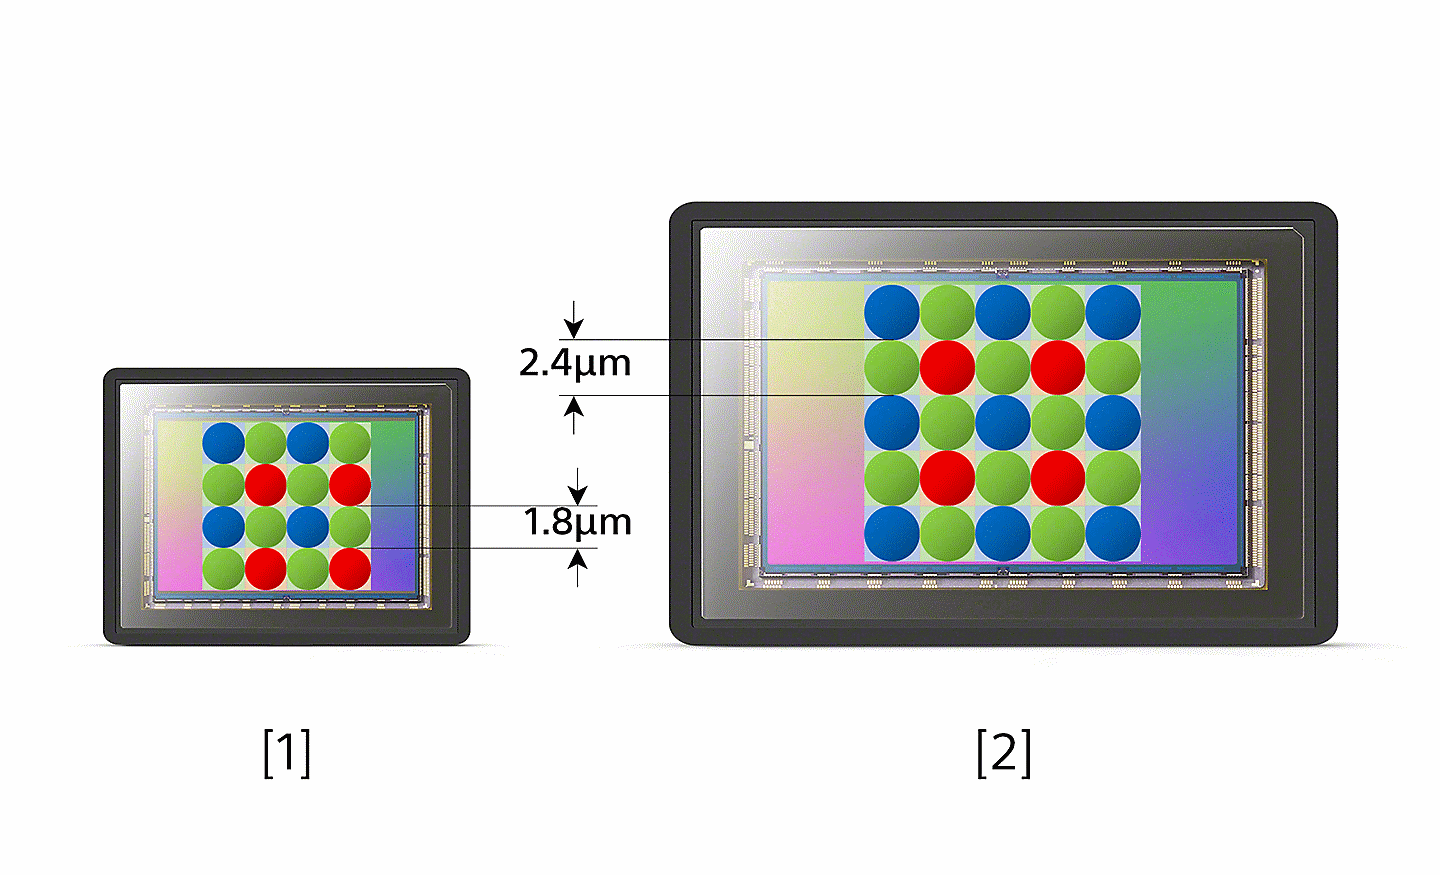 Diagramă care compară distanța între puncte la senzorul de imagine convențional cu senzorul de imagine de 1 inch de la Xperia